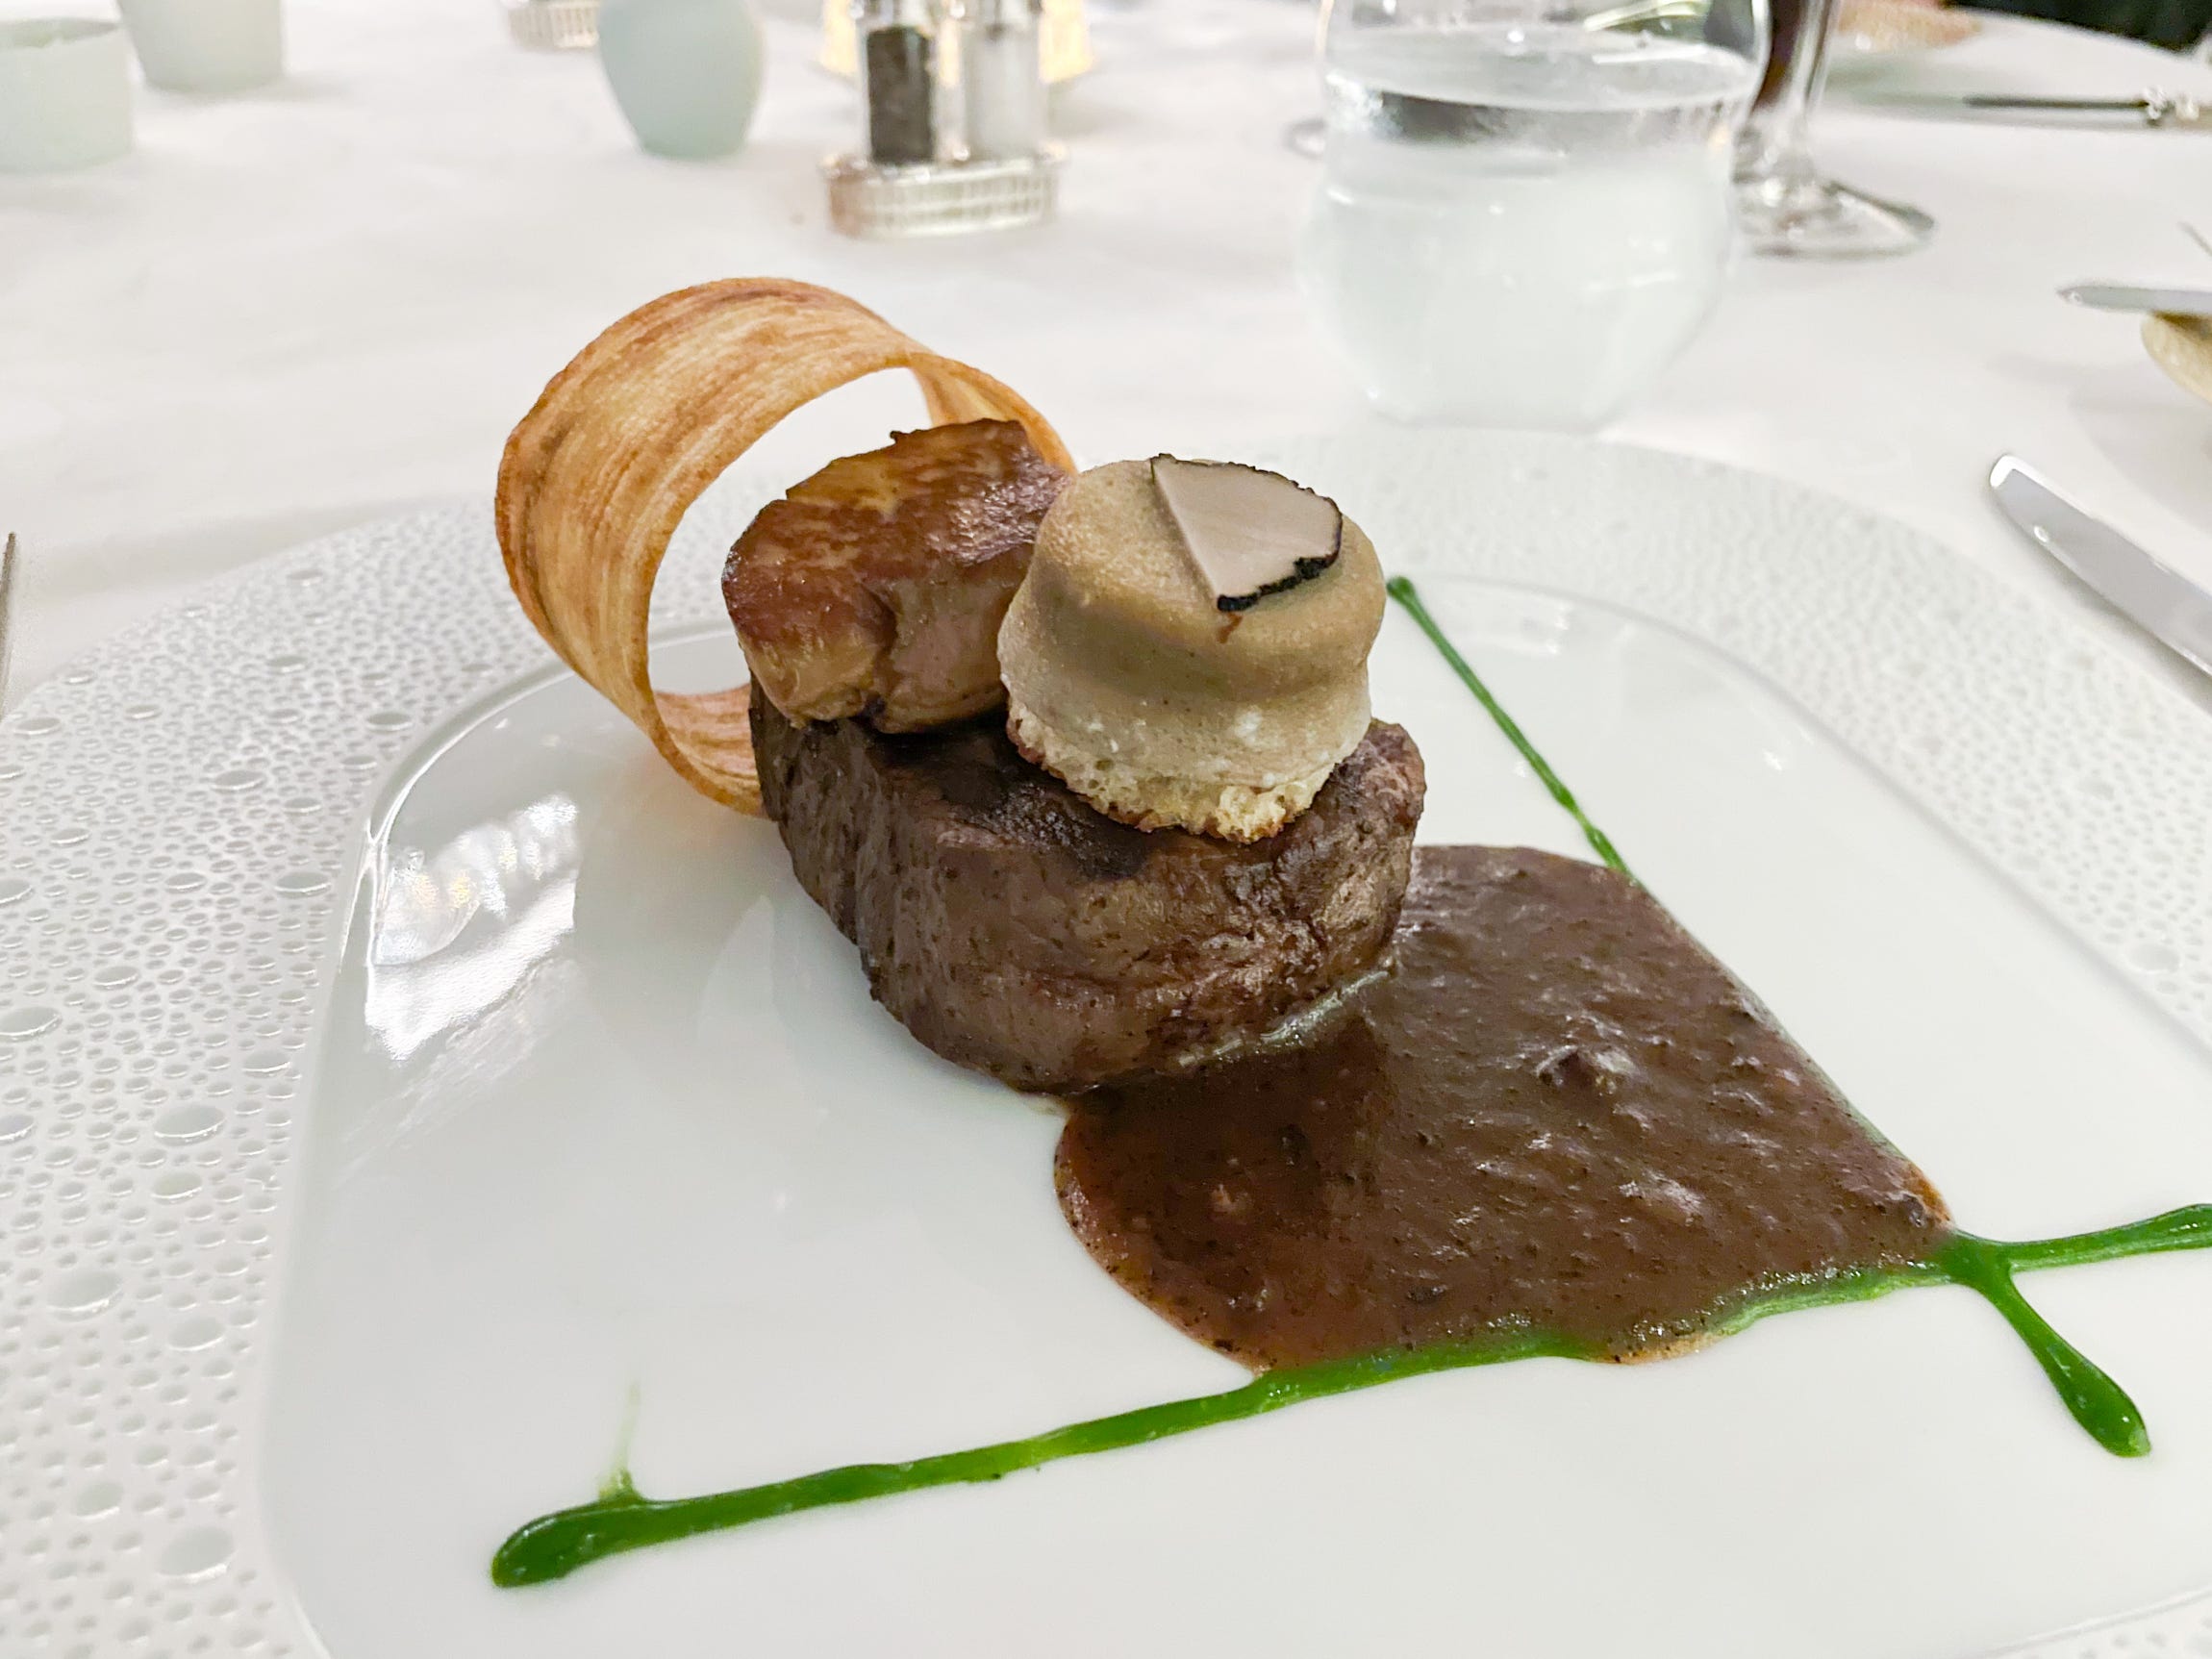 Het diner bestond uit ossenhaas met gebakken foie gras.